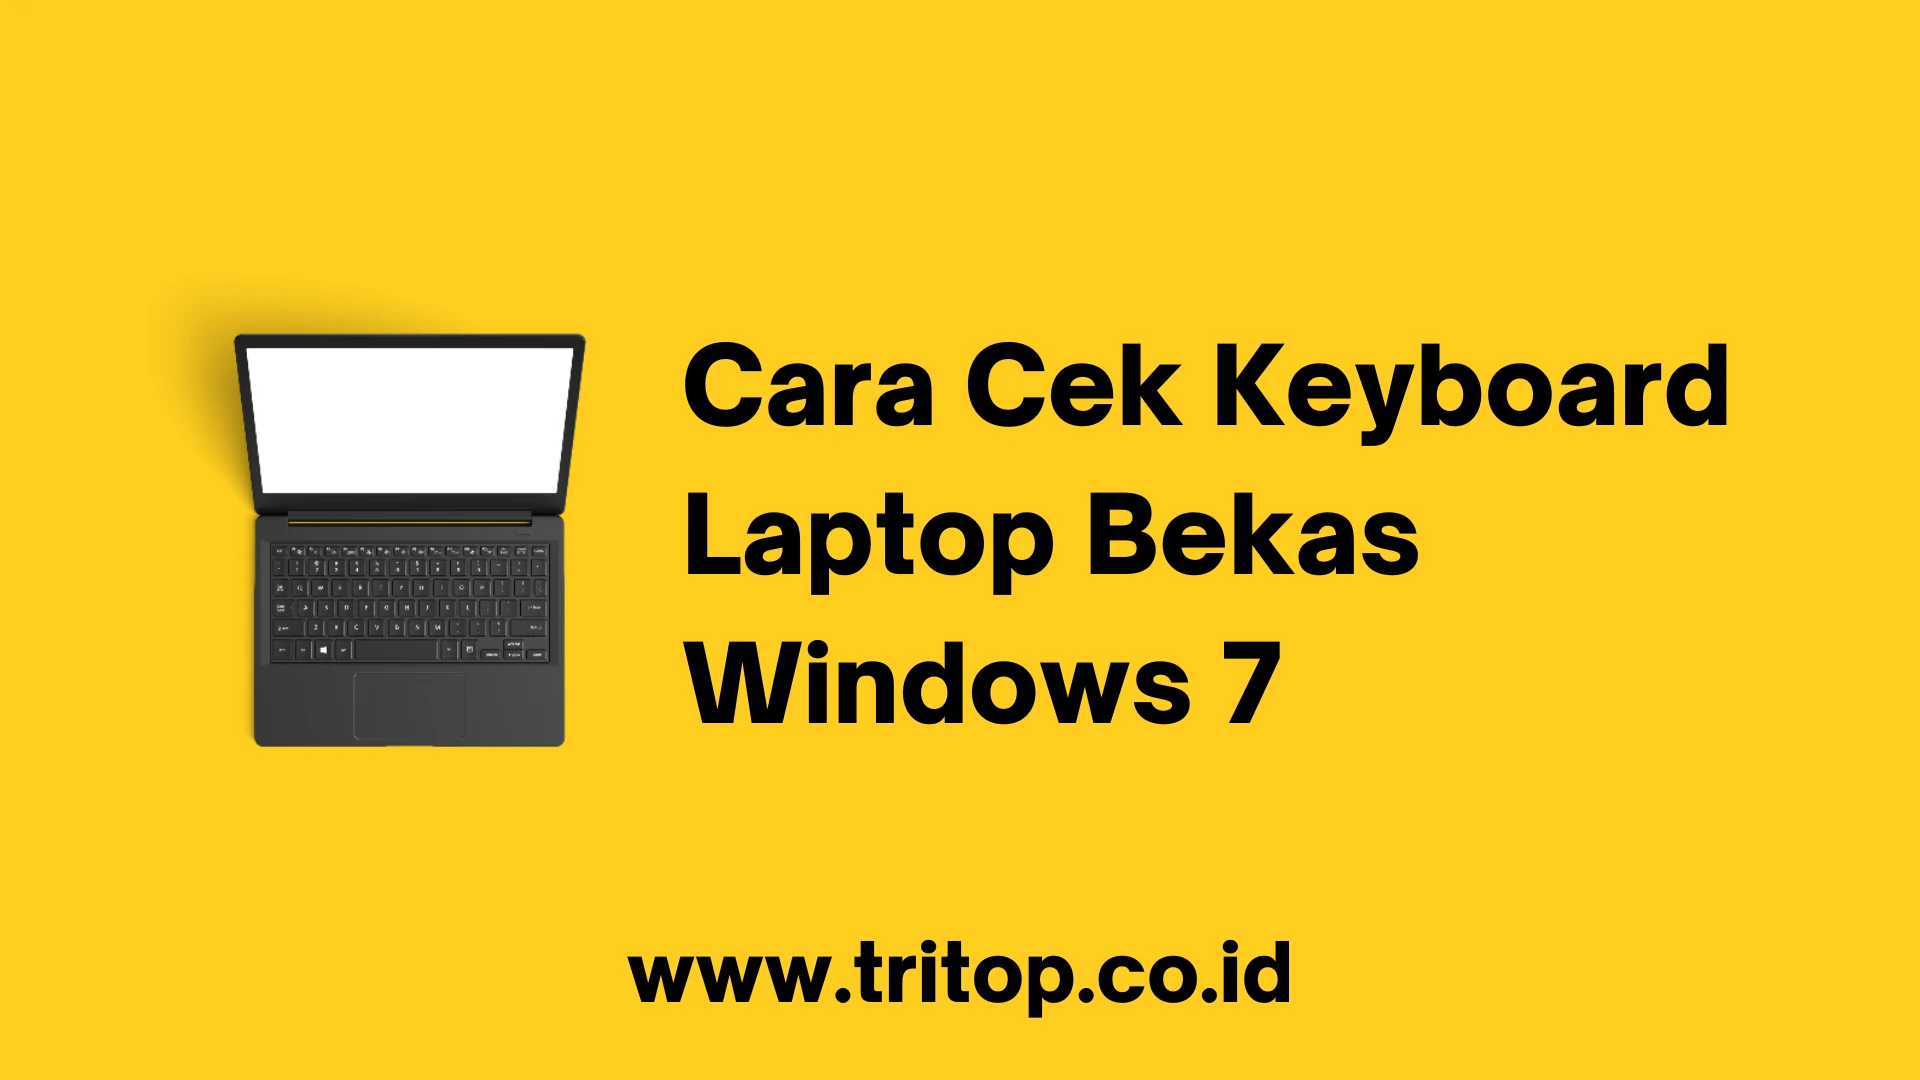 Cara Cek Keyboard Laptop Bekas Windows 7